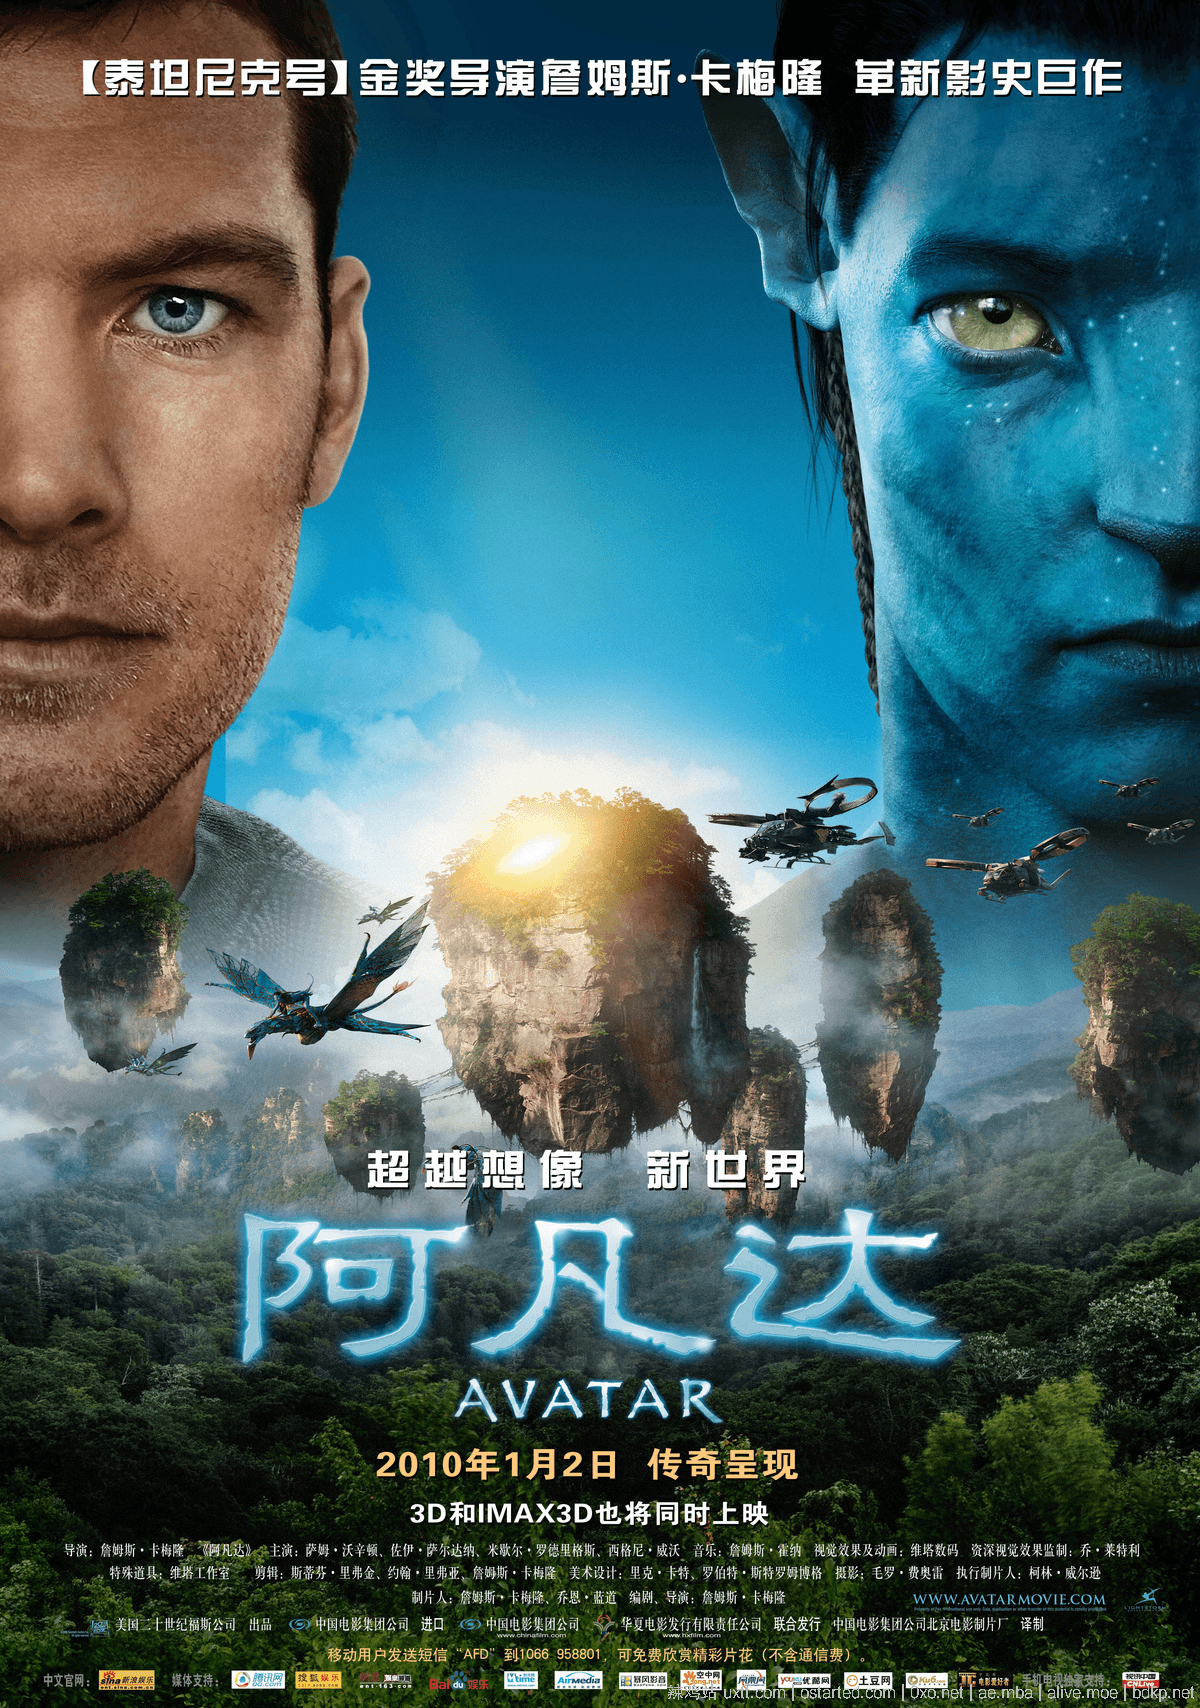 阿凡达 4k 2160p BT下载 Avatar 1080p 2009 3D 蓝光 英语中文字幕 - 第3张图片